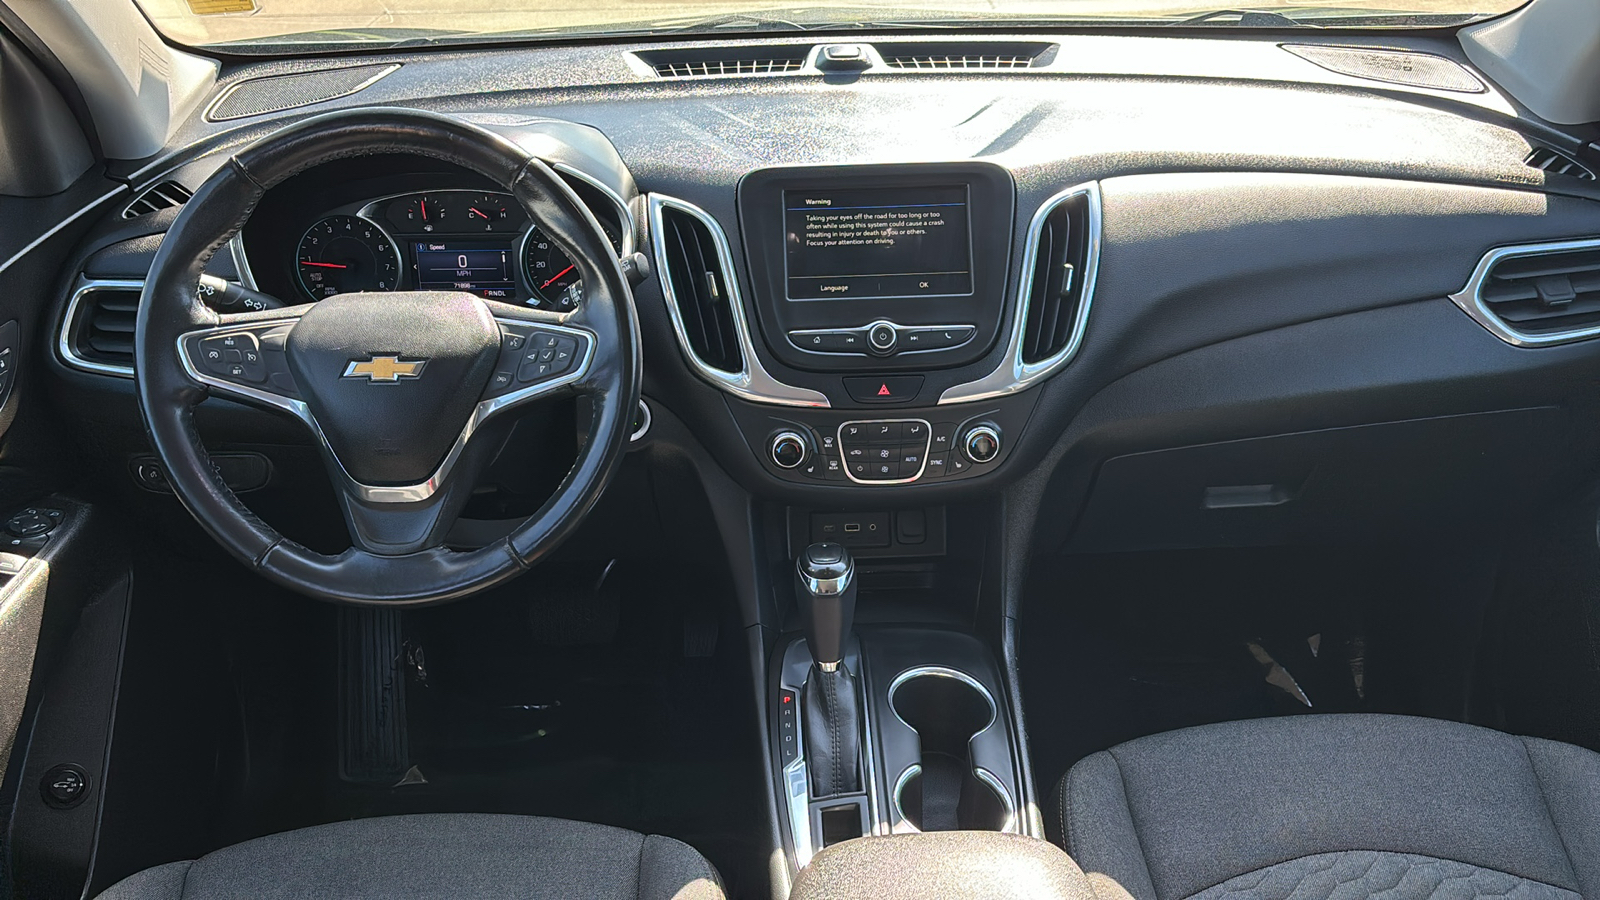 2019 Chevrolet Equinox LT 11